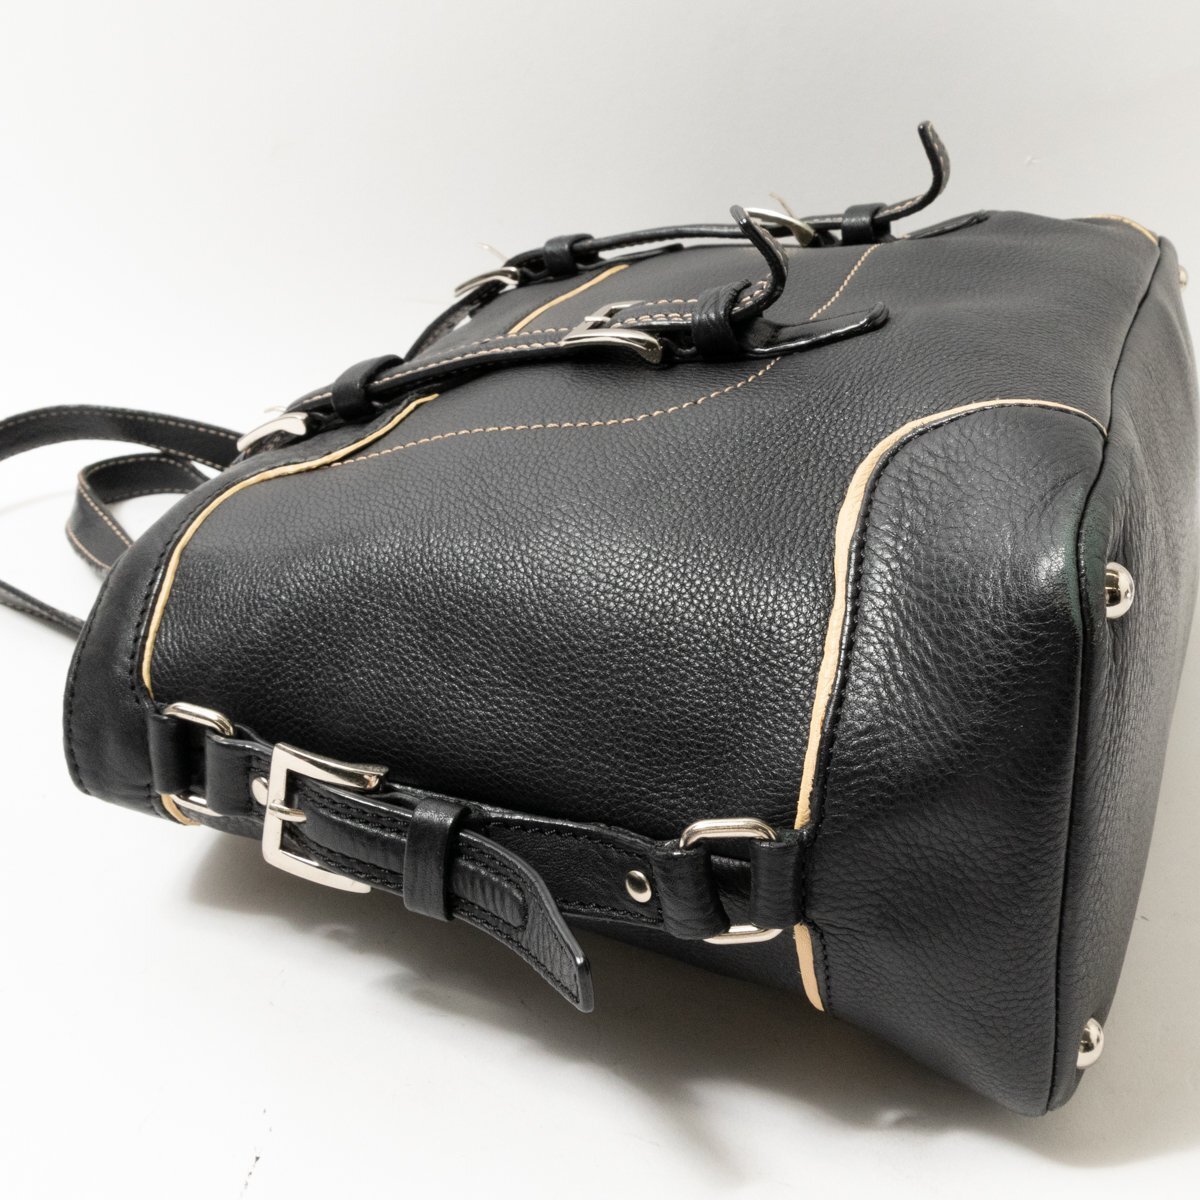 TOPKAPI ハンドバッグ トプカピ トートバッグ 手持ち 肩掛け ブラック ステッチ ファスナー開閉 綺麗め シンプル bag 鞄 婦人 レディースの画像4